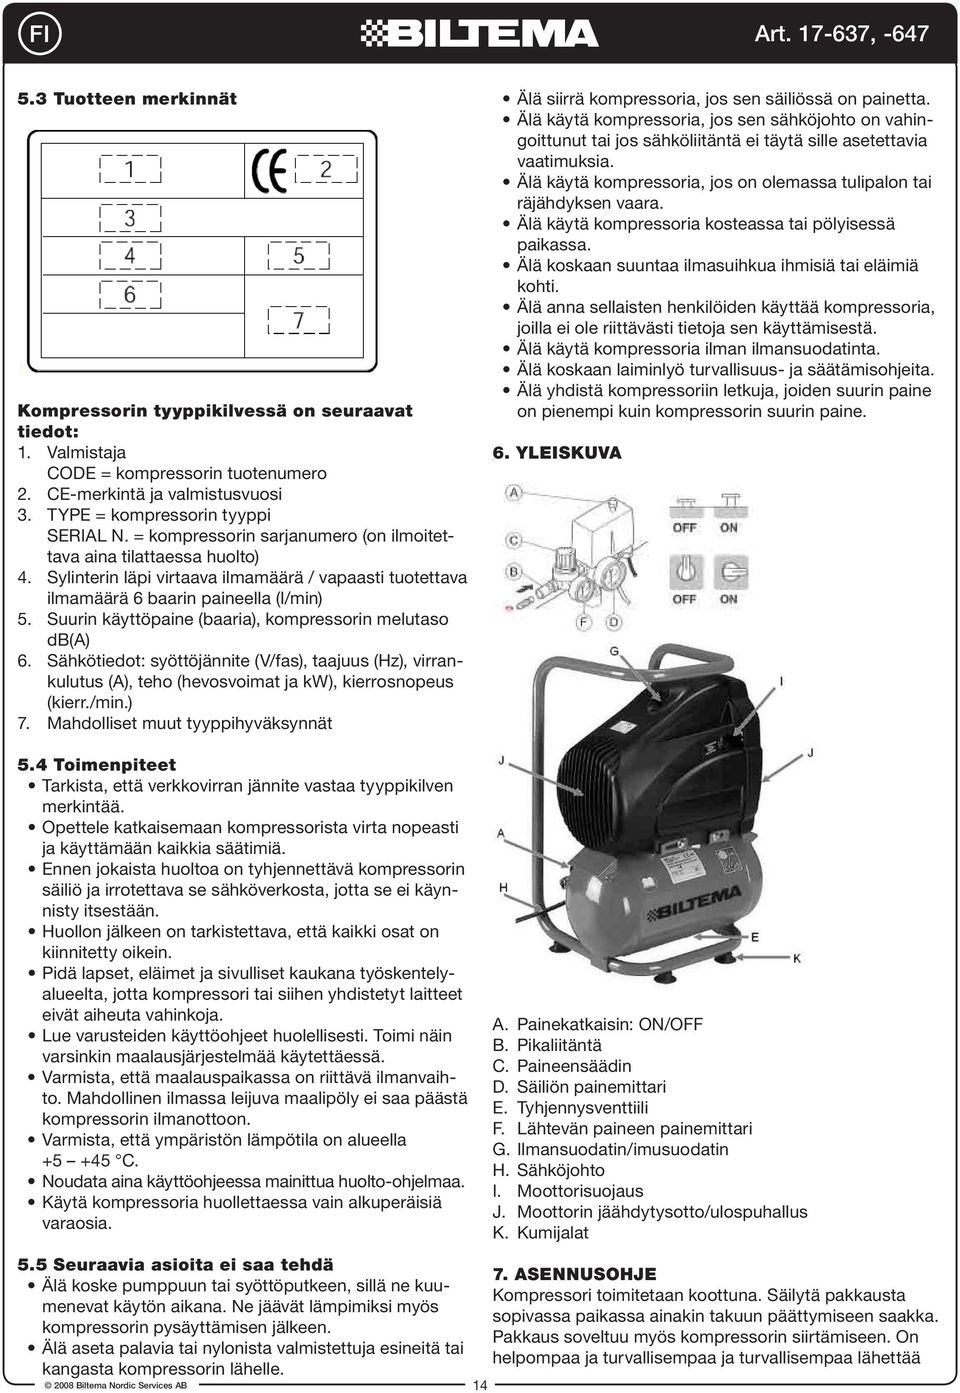 Suurin käyttöpaine (baaria), kompressorin melutaso db(a) 6. Sähkötiedot: syöttöjännite (V/fas), taajuus (Hz), virrankulutus (A), teho (hevosvoimat ja kw), kierrosnopeus (kierr./min.) 7.